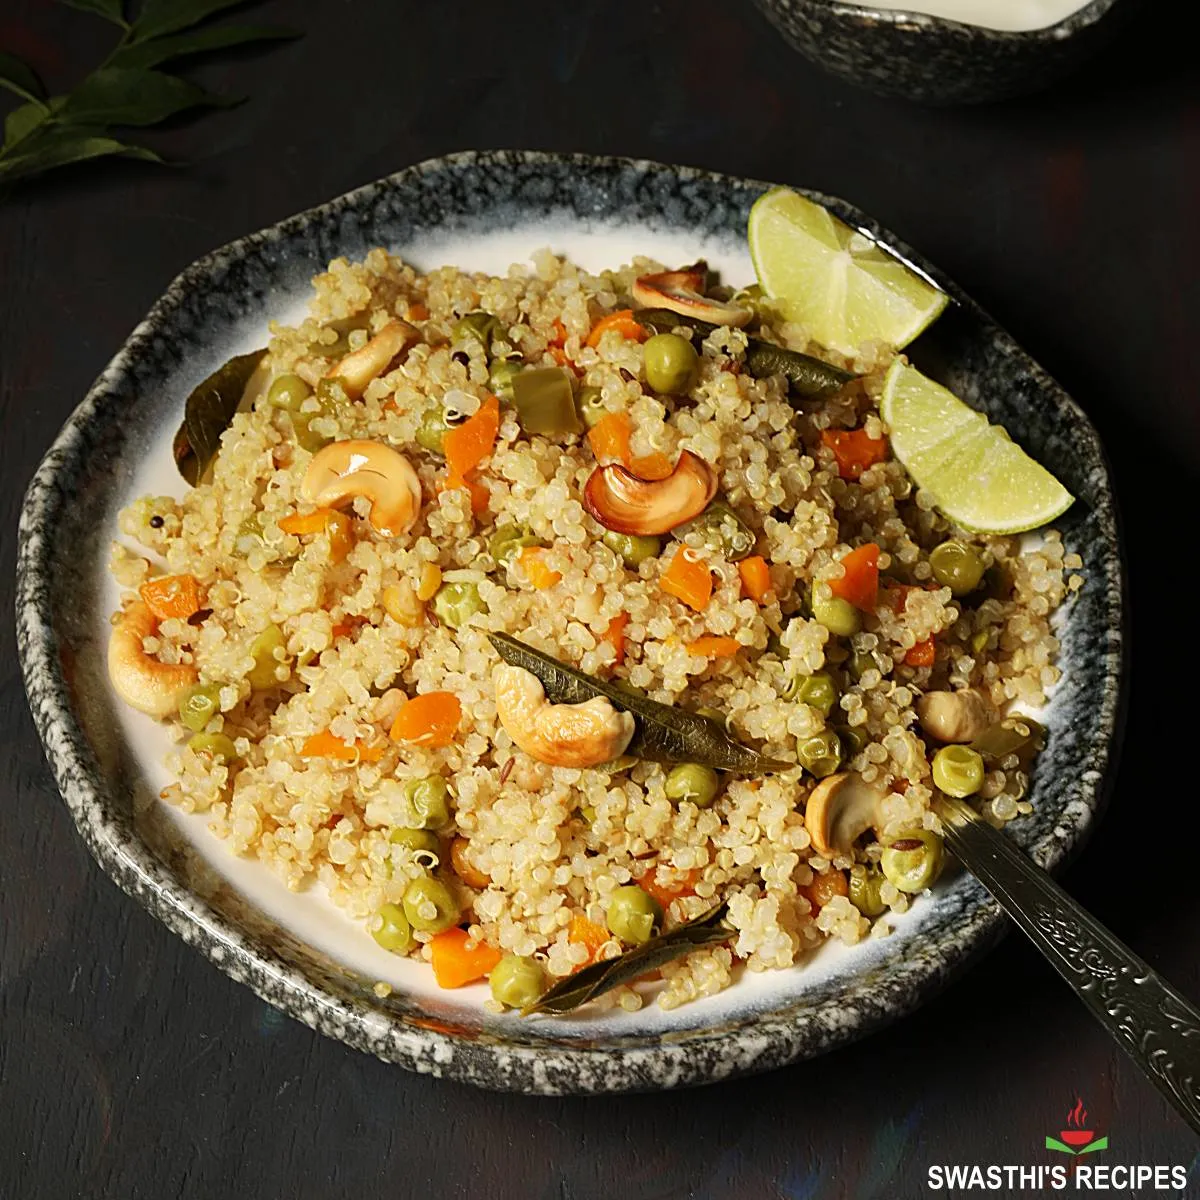 Quinoa upma recipe made in Indian style